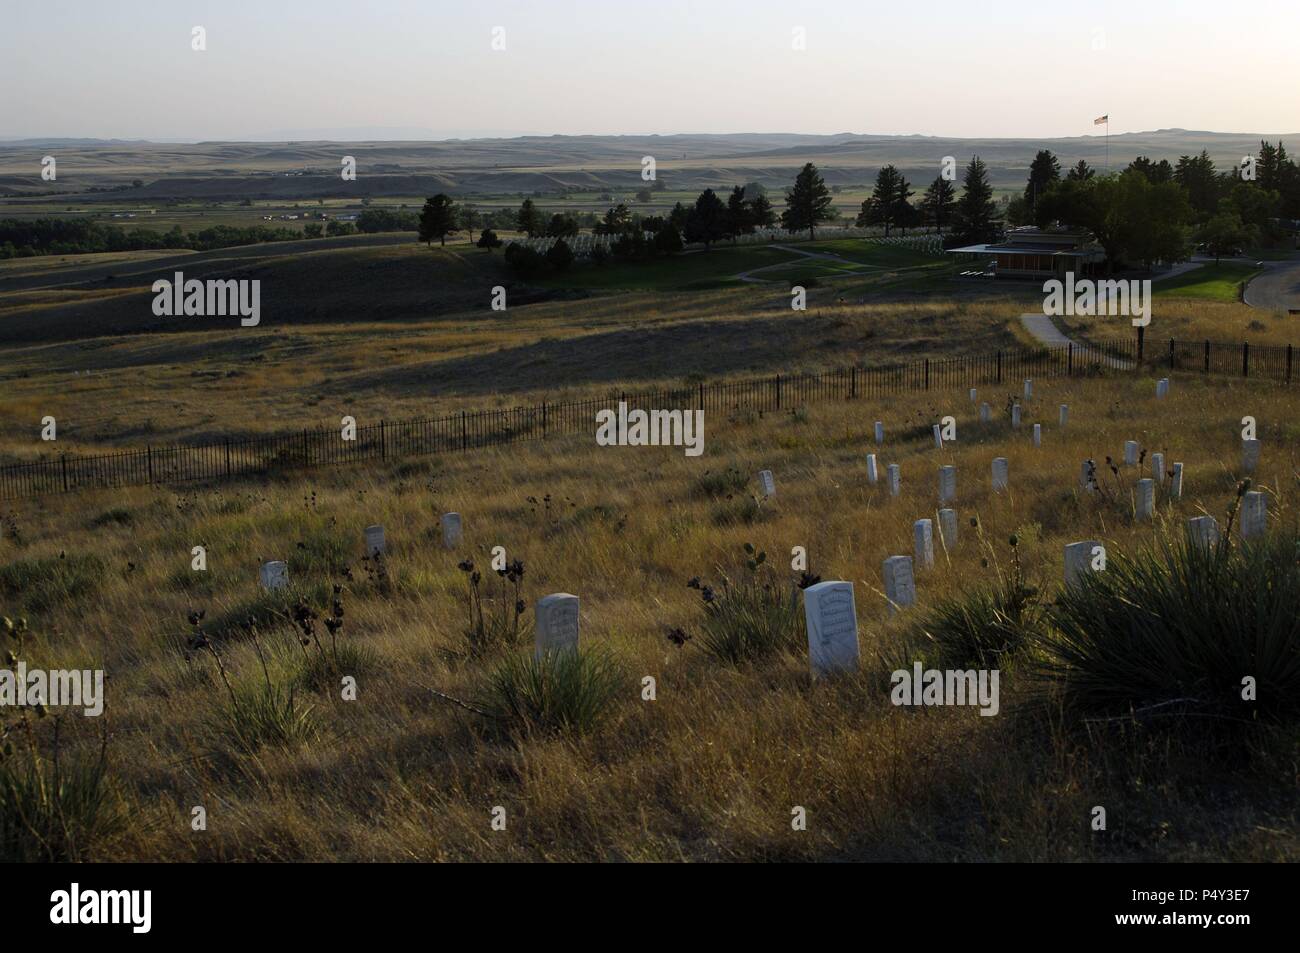 MONUMENTO NACIONAL DEL CAMPO DE BATALLA DE LITTLE BIGHORN (25-26 de junio de 1876). 'LAST STAND HILL 7TH CAVALRY MEMORIAL'. En la colina está marcado con lápidas el lugar en el que cayeron muertos Custer y los soldados del Séptimo de Caballería. Estado de Montaña. Estados Unidos. Stock Photo